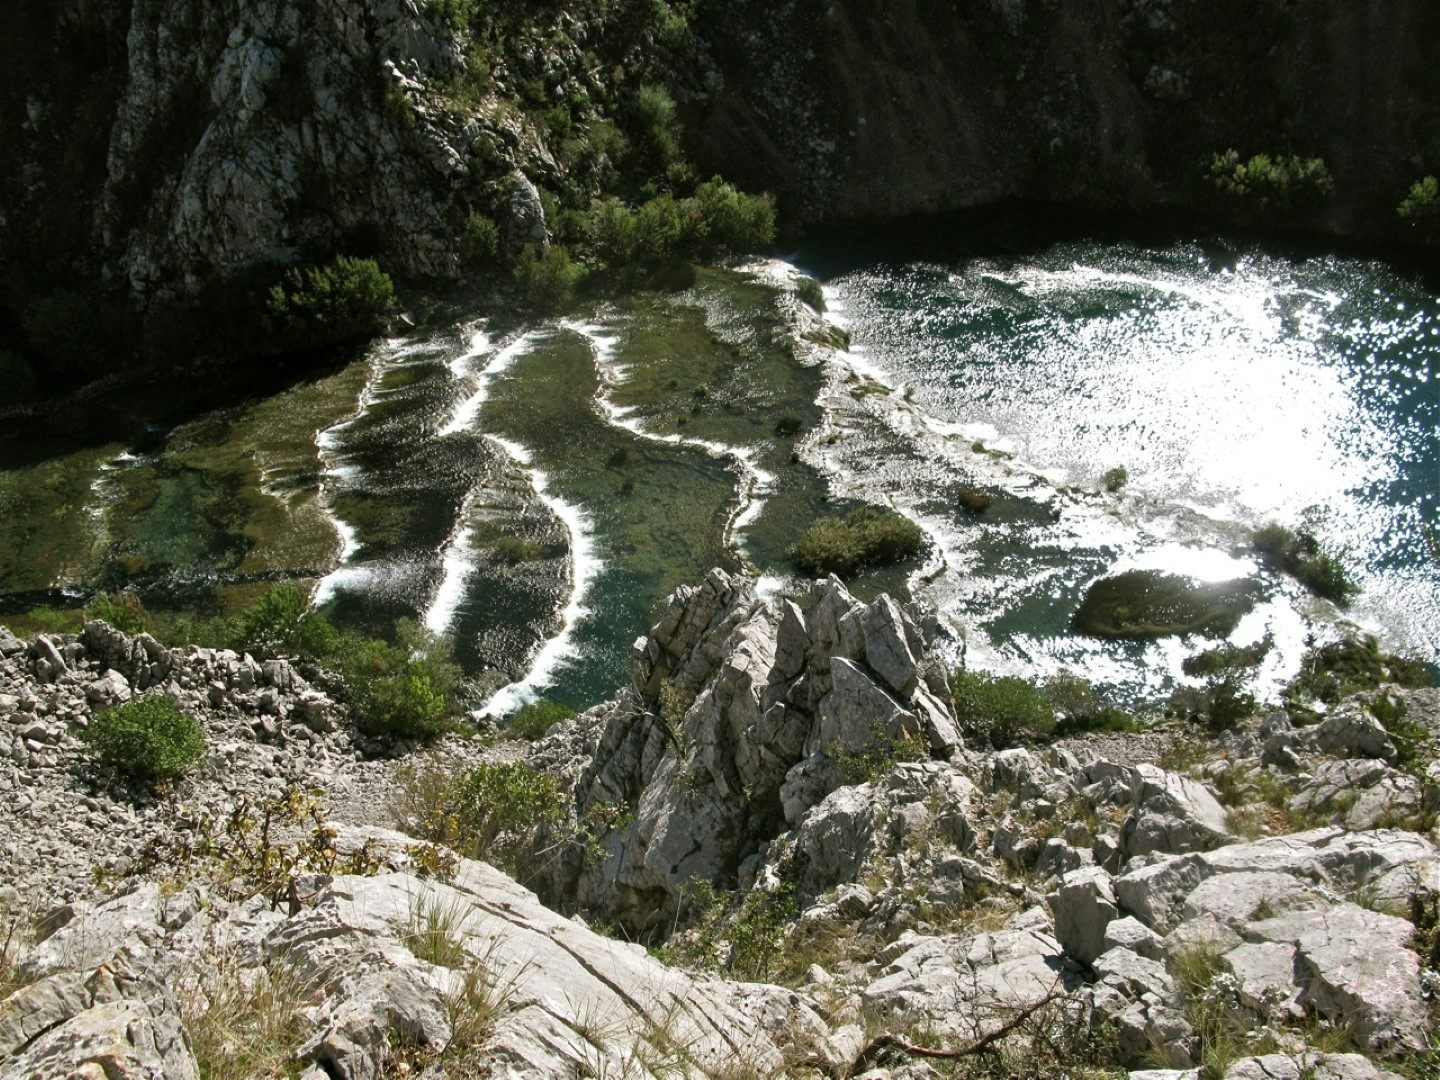 Spring waters of the karst region